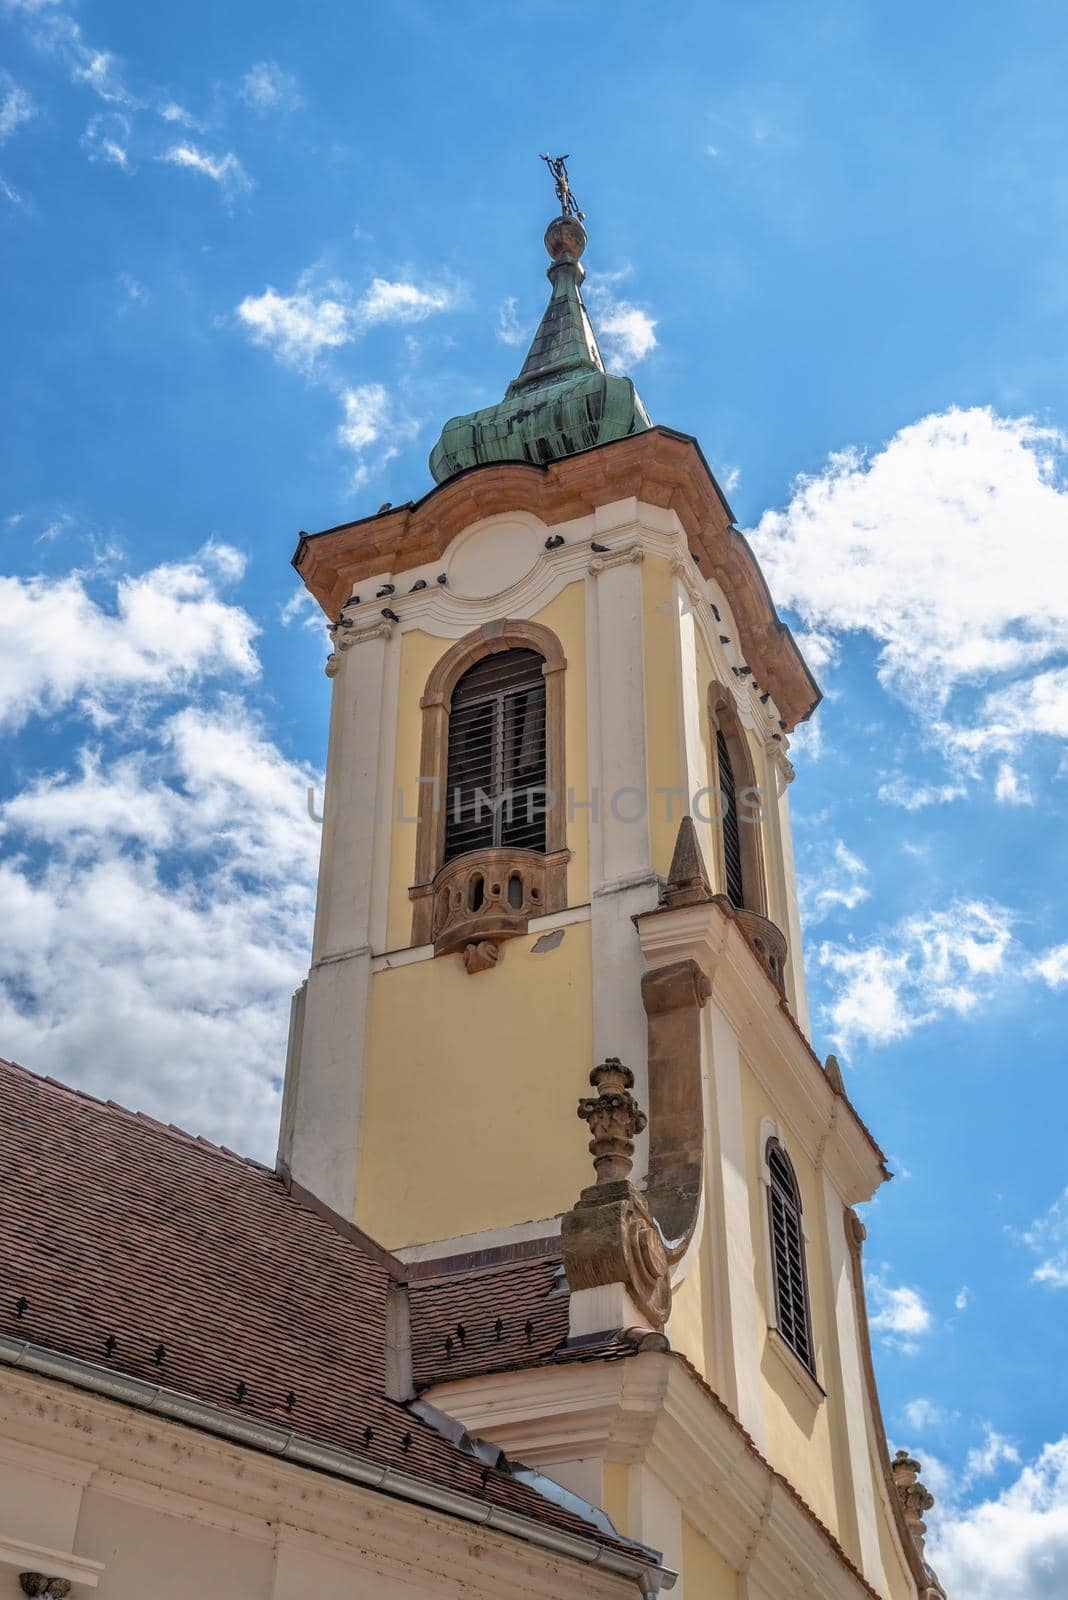 Blagovestenska church in Szentendre, Hungary by Multipedia